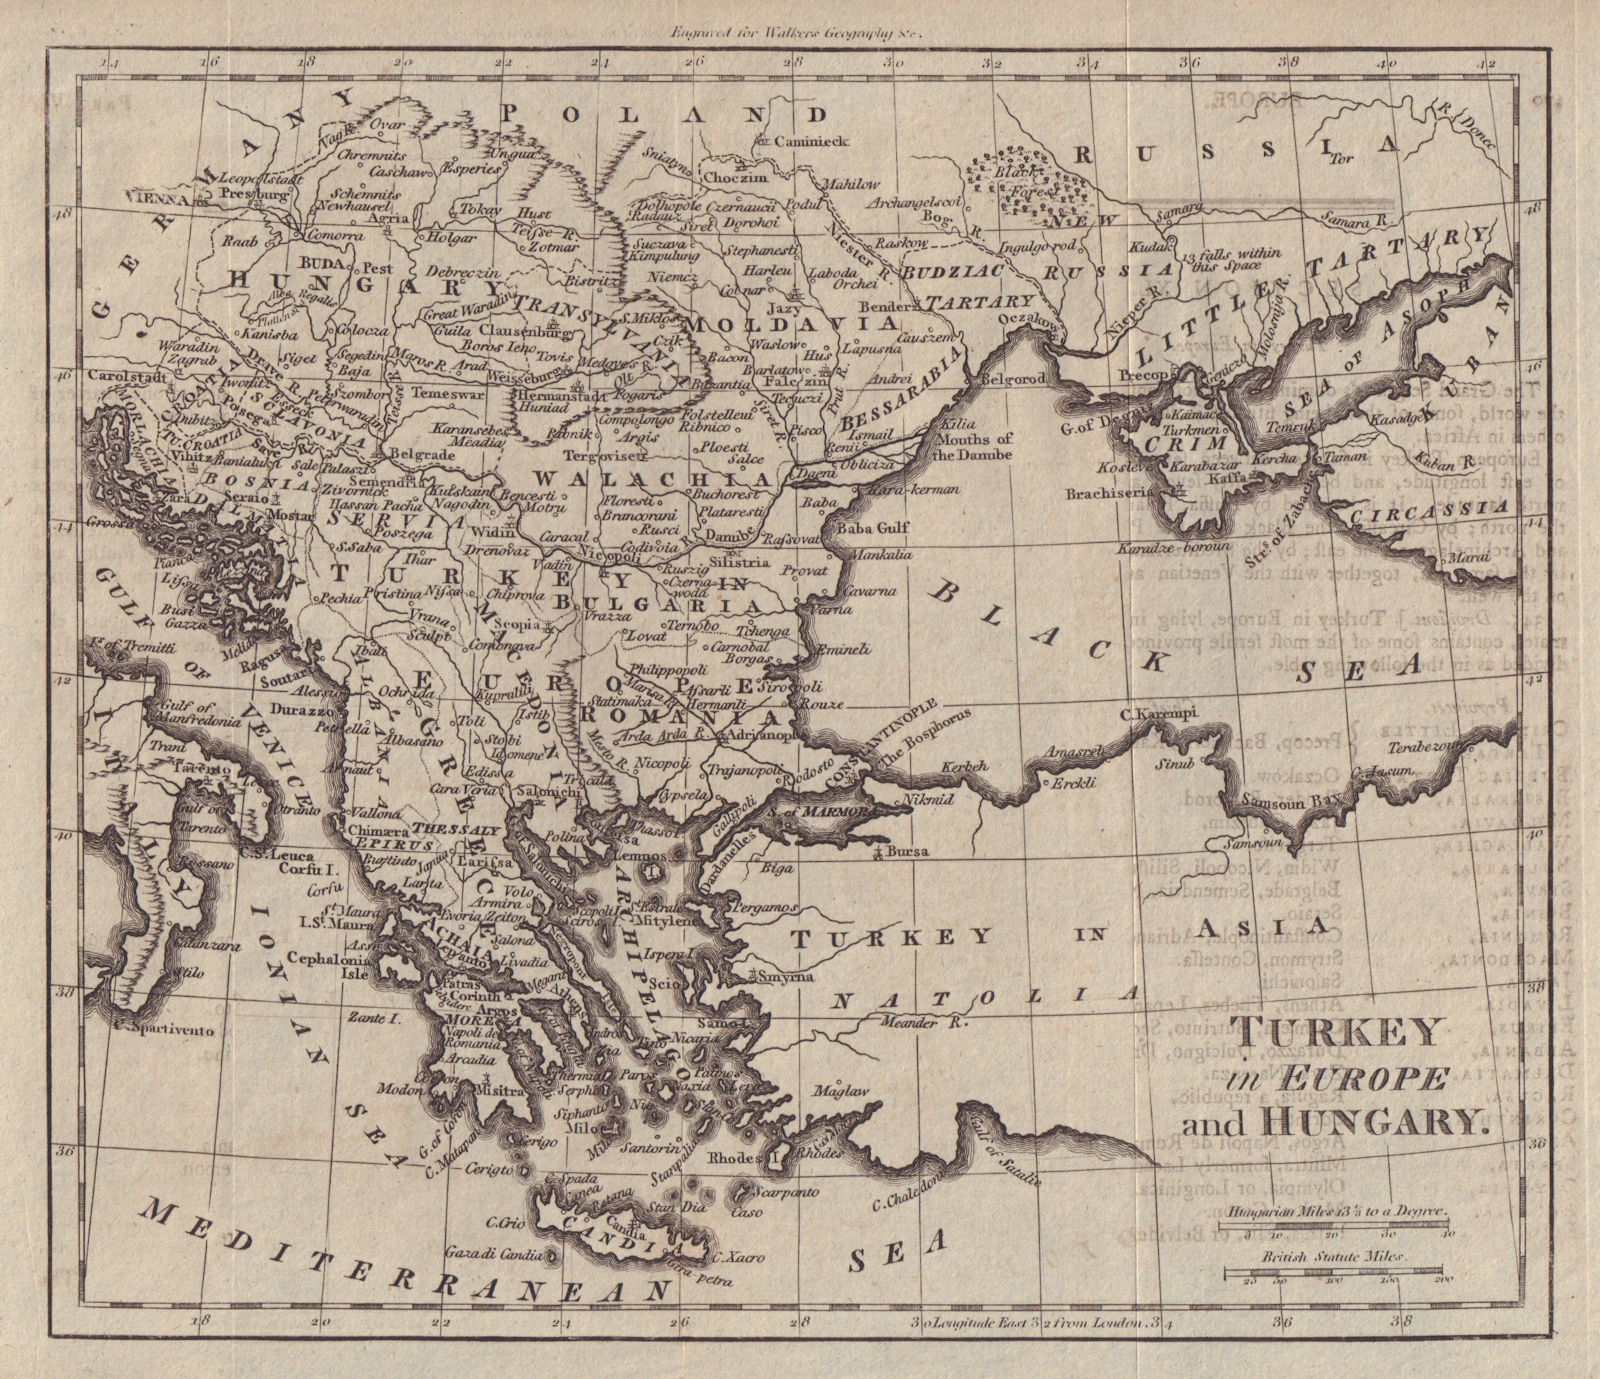 Associate Product Turkey in Europe & Hungary. Balkans Ukraine Greece Wallachia. WALKER c1795 map